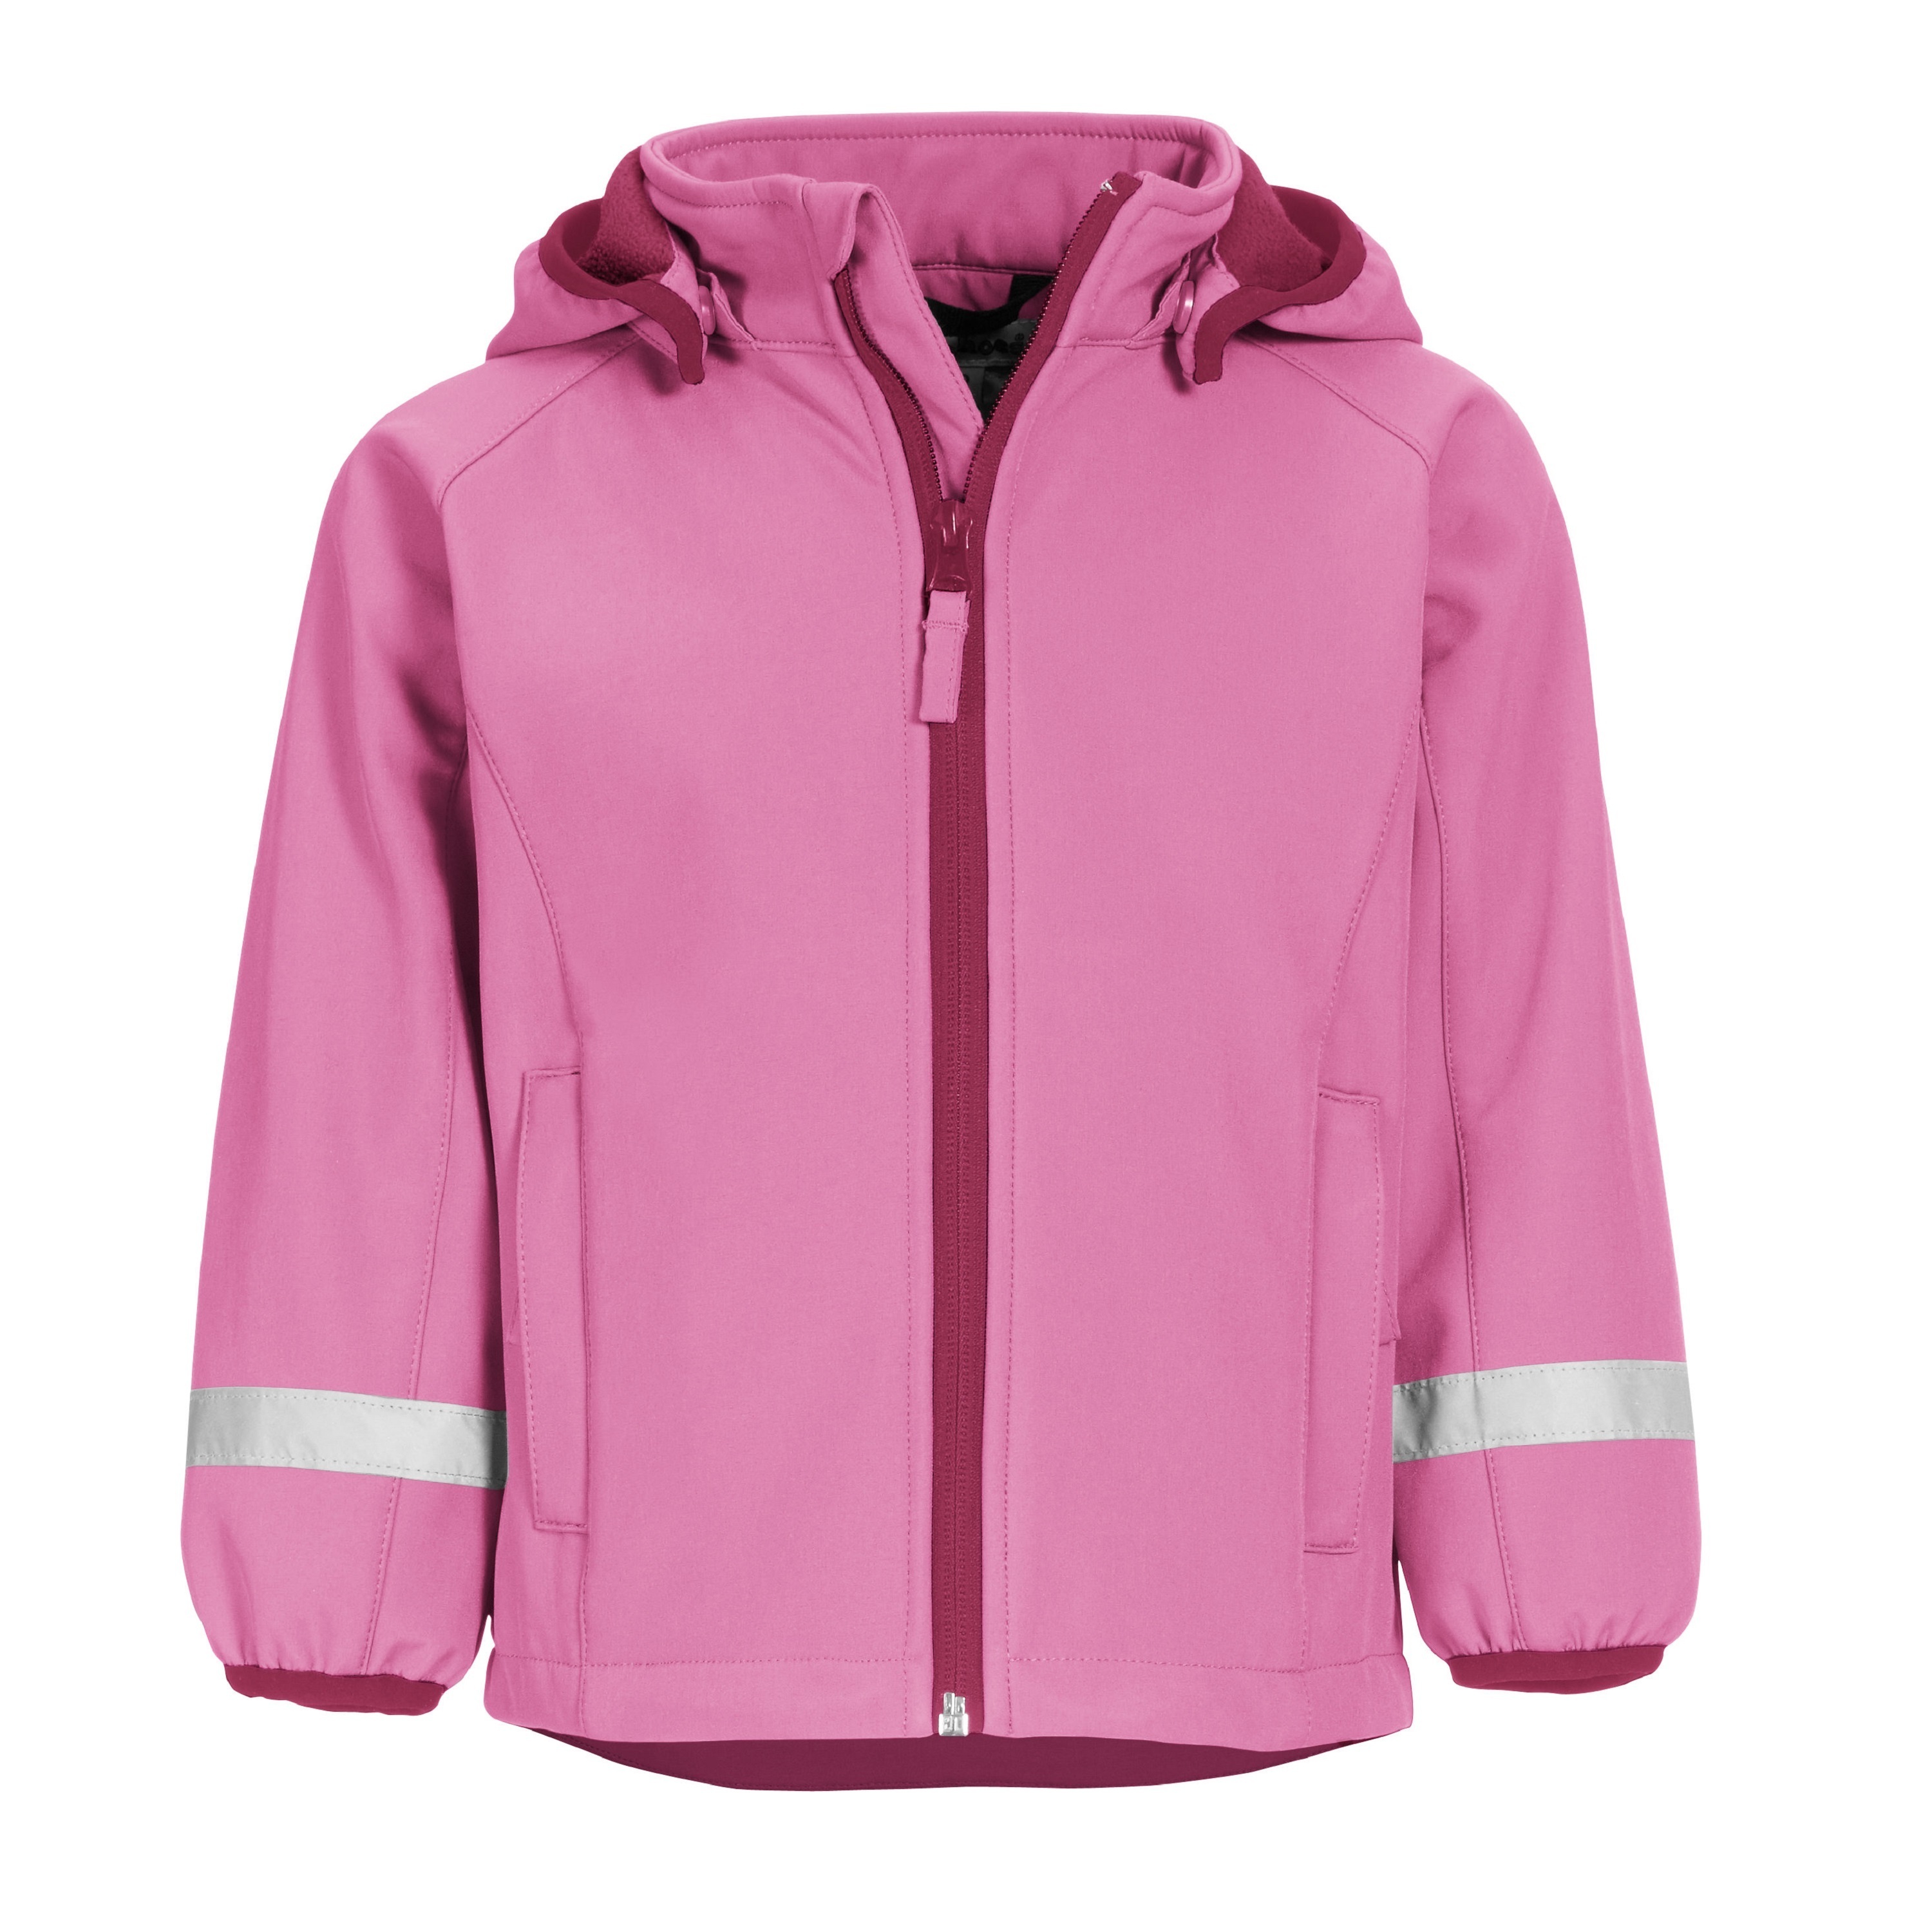 Куртка детская Playshoes 430110, розовый, 116